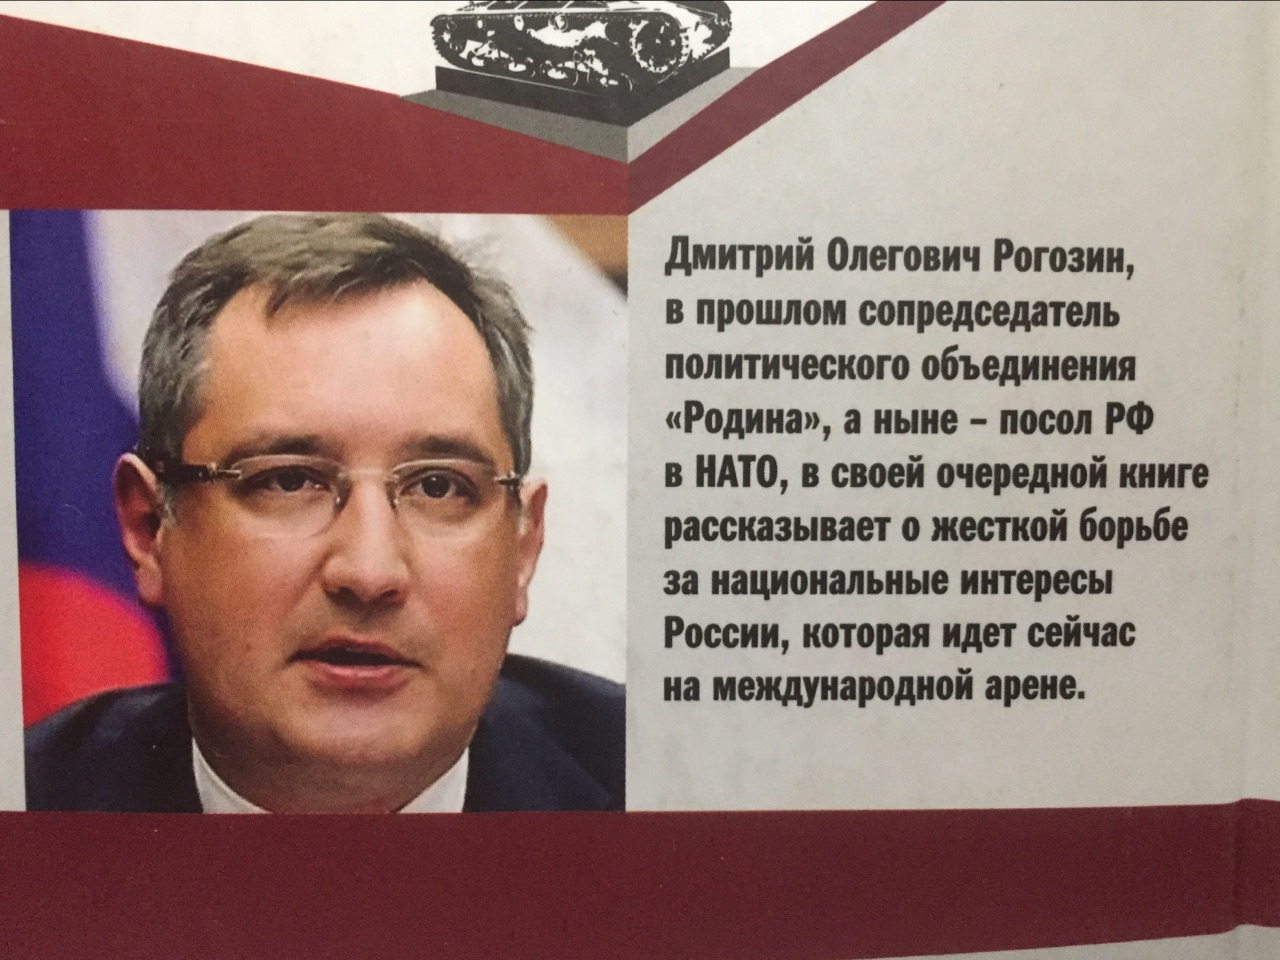 Вот такие книжки публикует Рогозин про свою «борьбу за национальные интересы» в собственном кармане